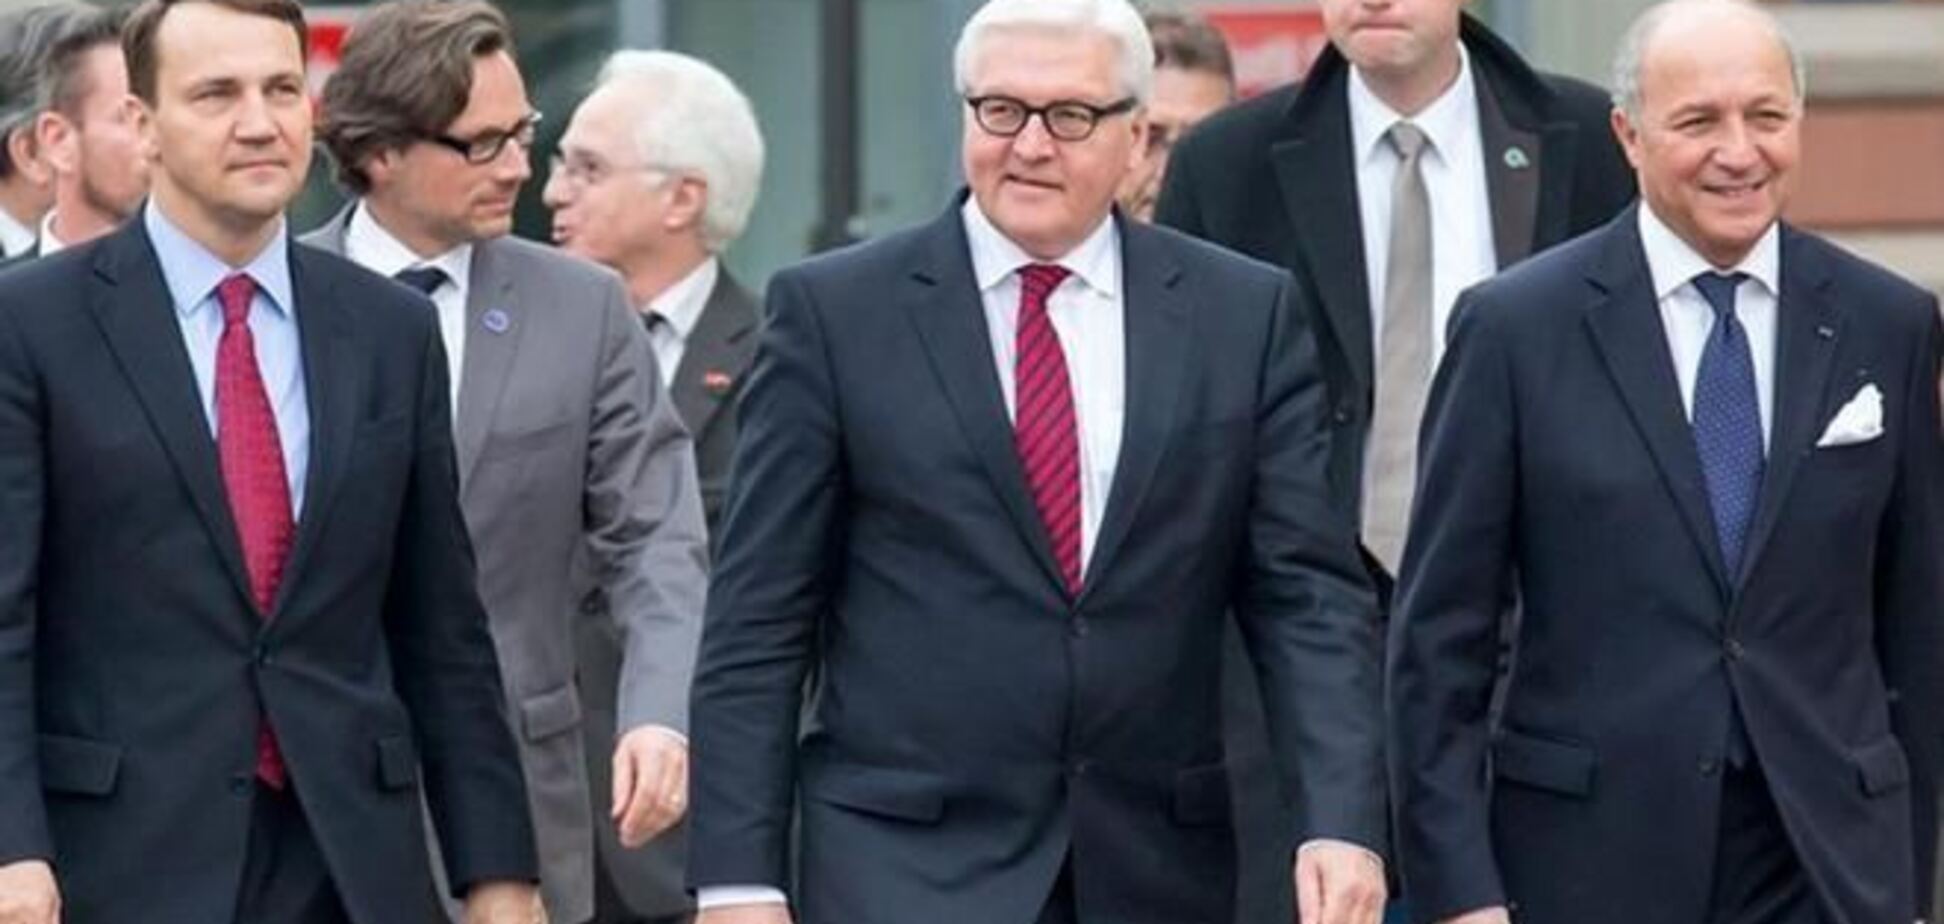 Германия, Франция и Польша выступают за новую политику ЕС на востоке Европы